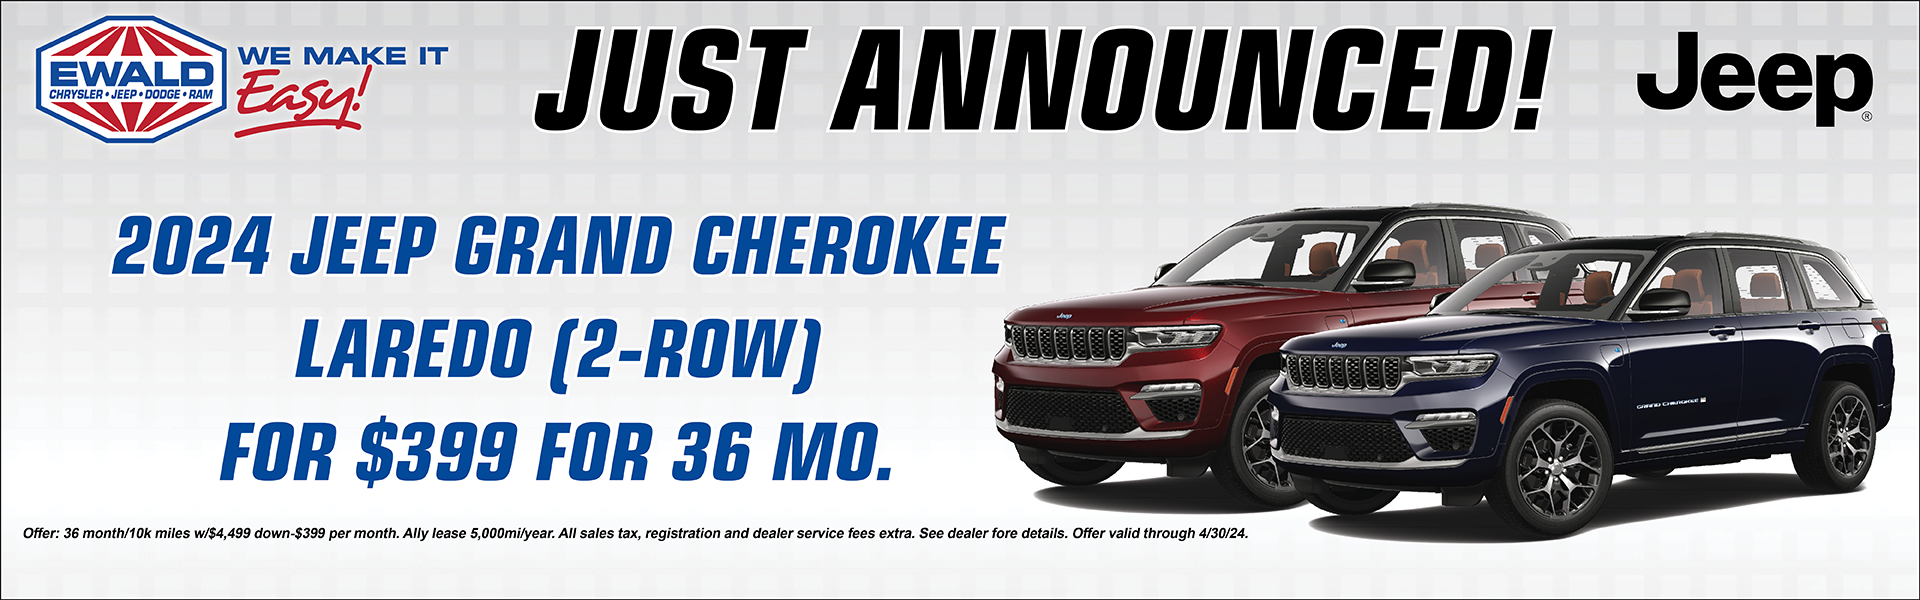 Save on Jeep Grand Cherokee 2 Row!